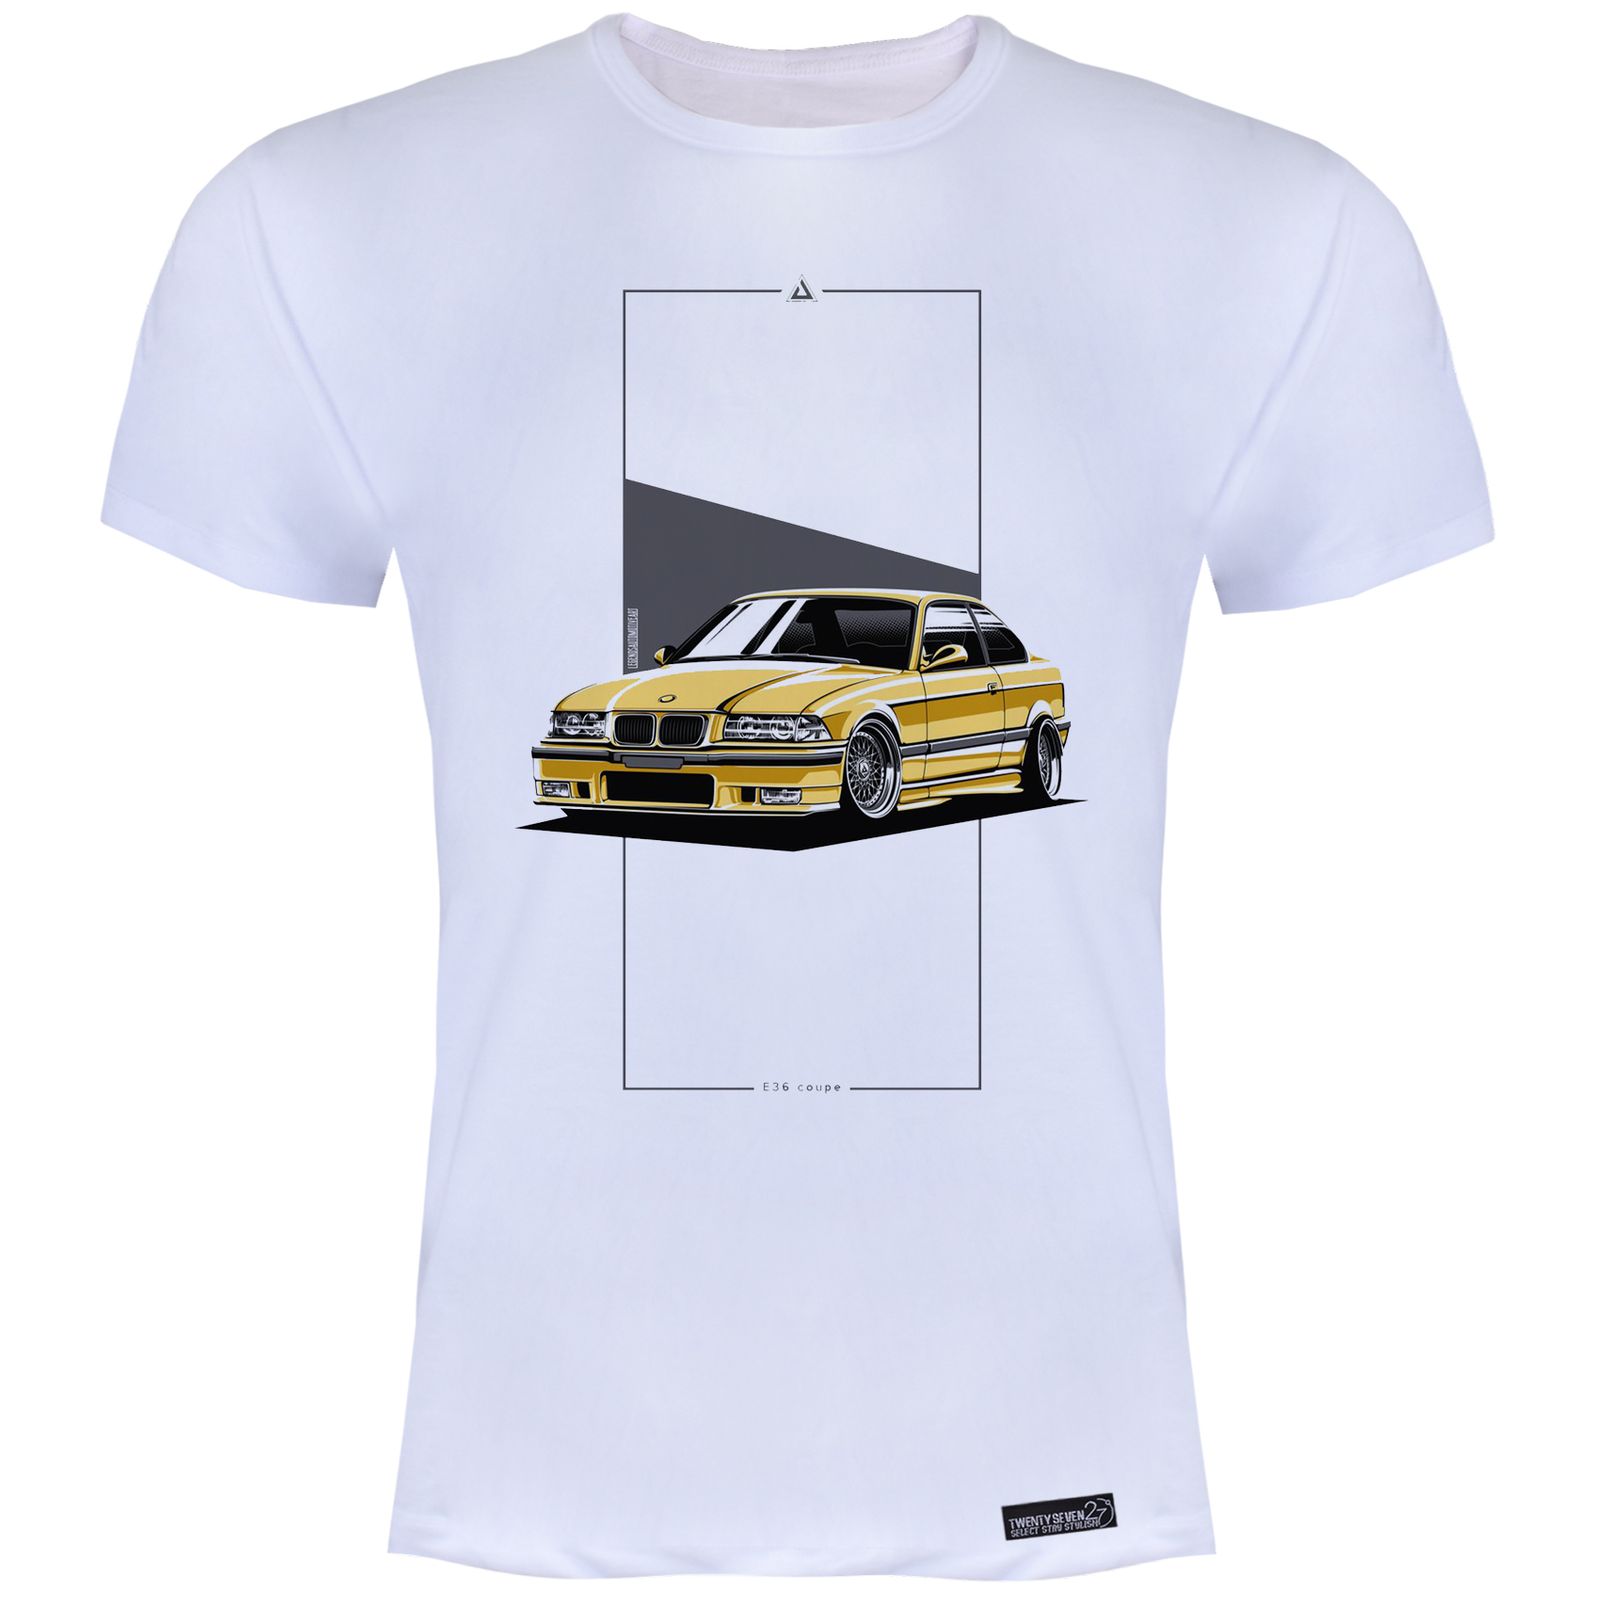 تی شرت آستین کوتاه مردانه 27 مدل ماشین کد KV245 رنگ سفید -  - 2